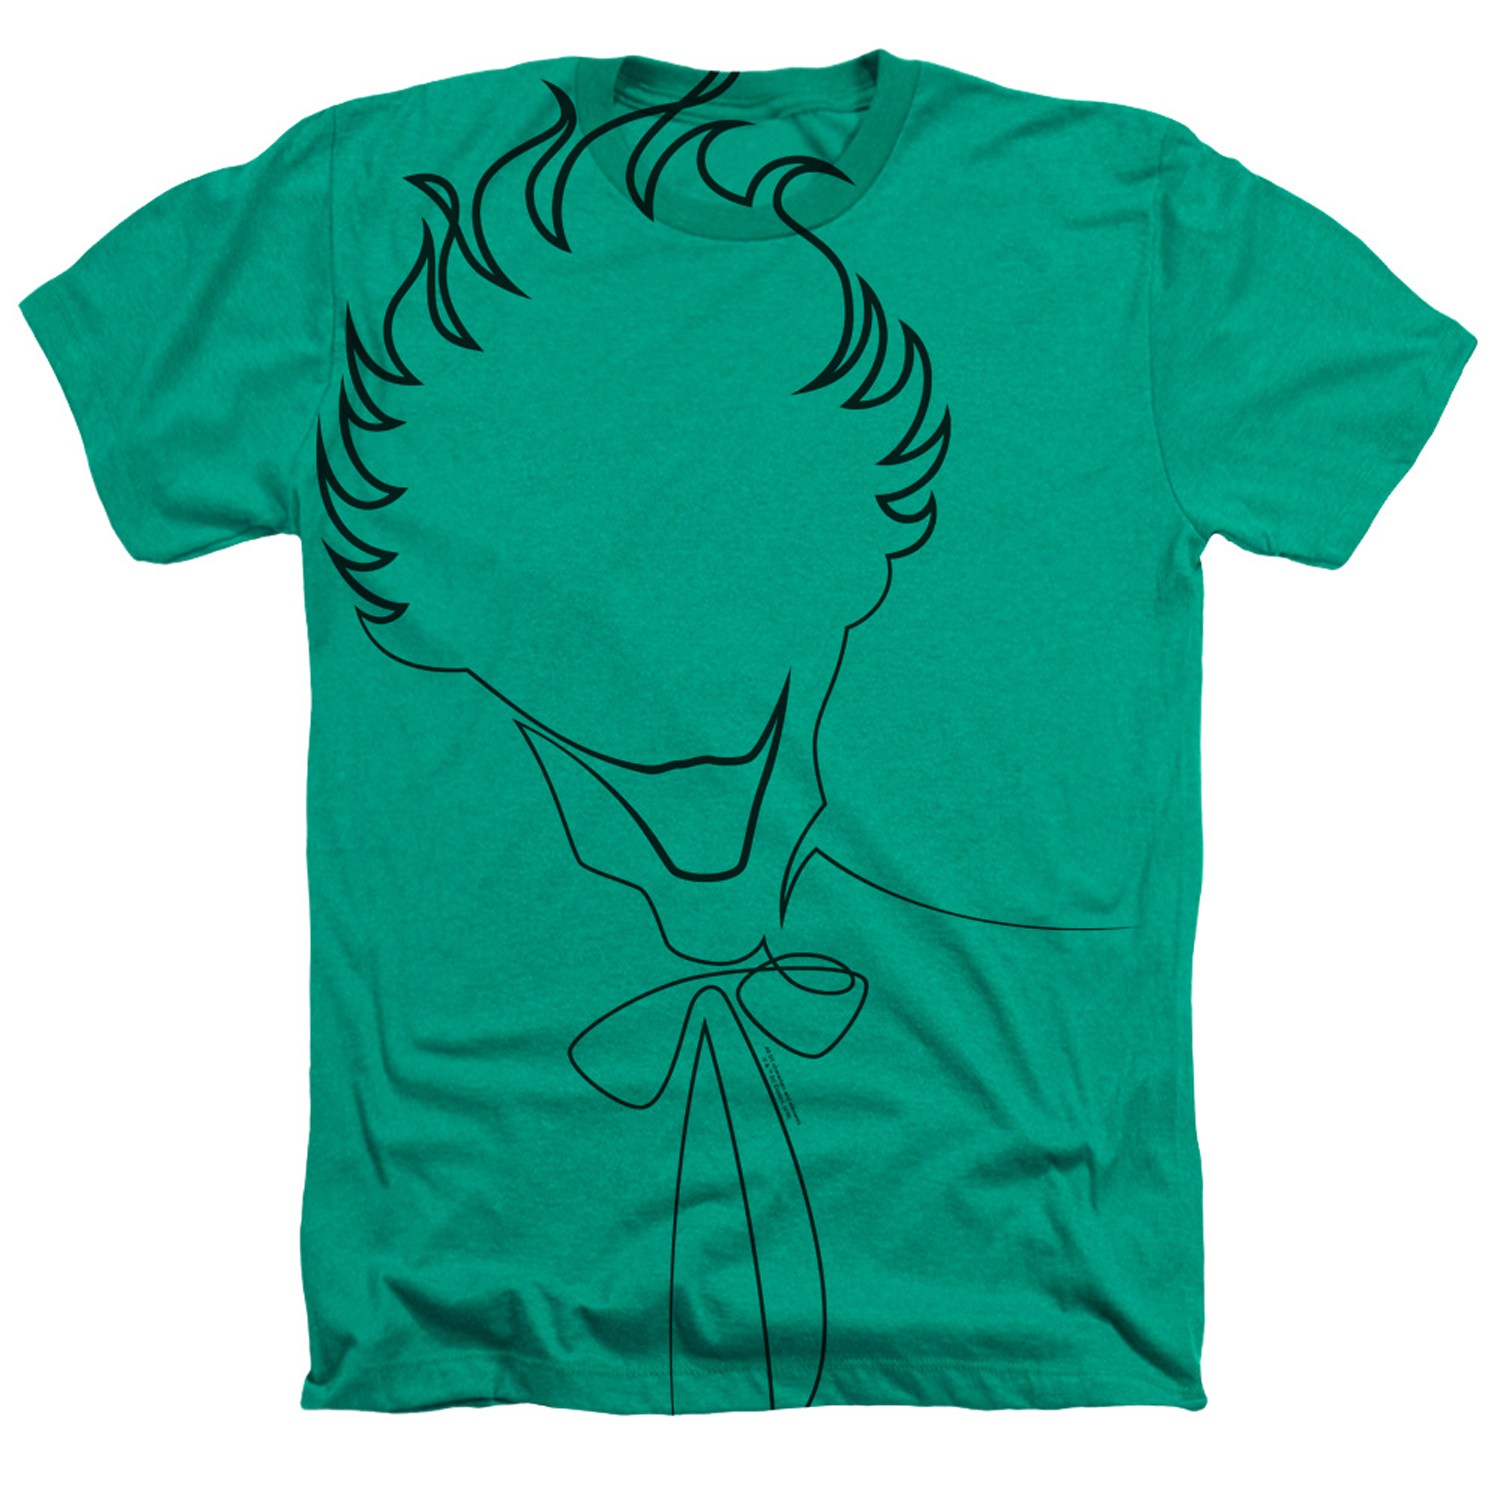 Joker Outline Tshirt